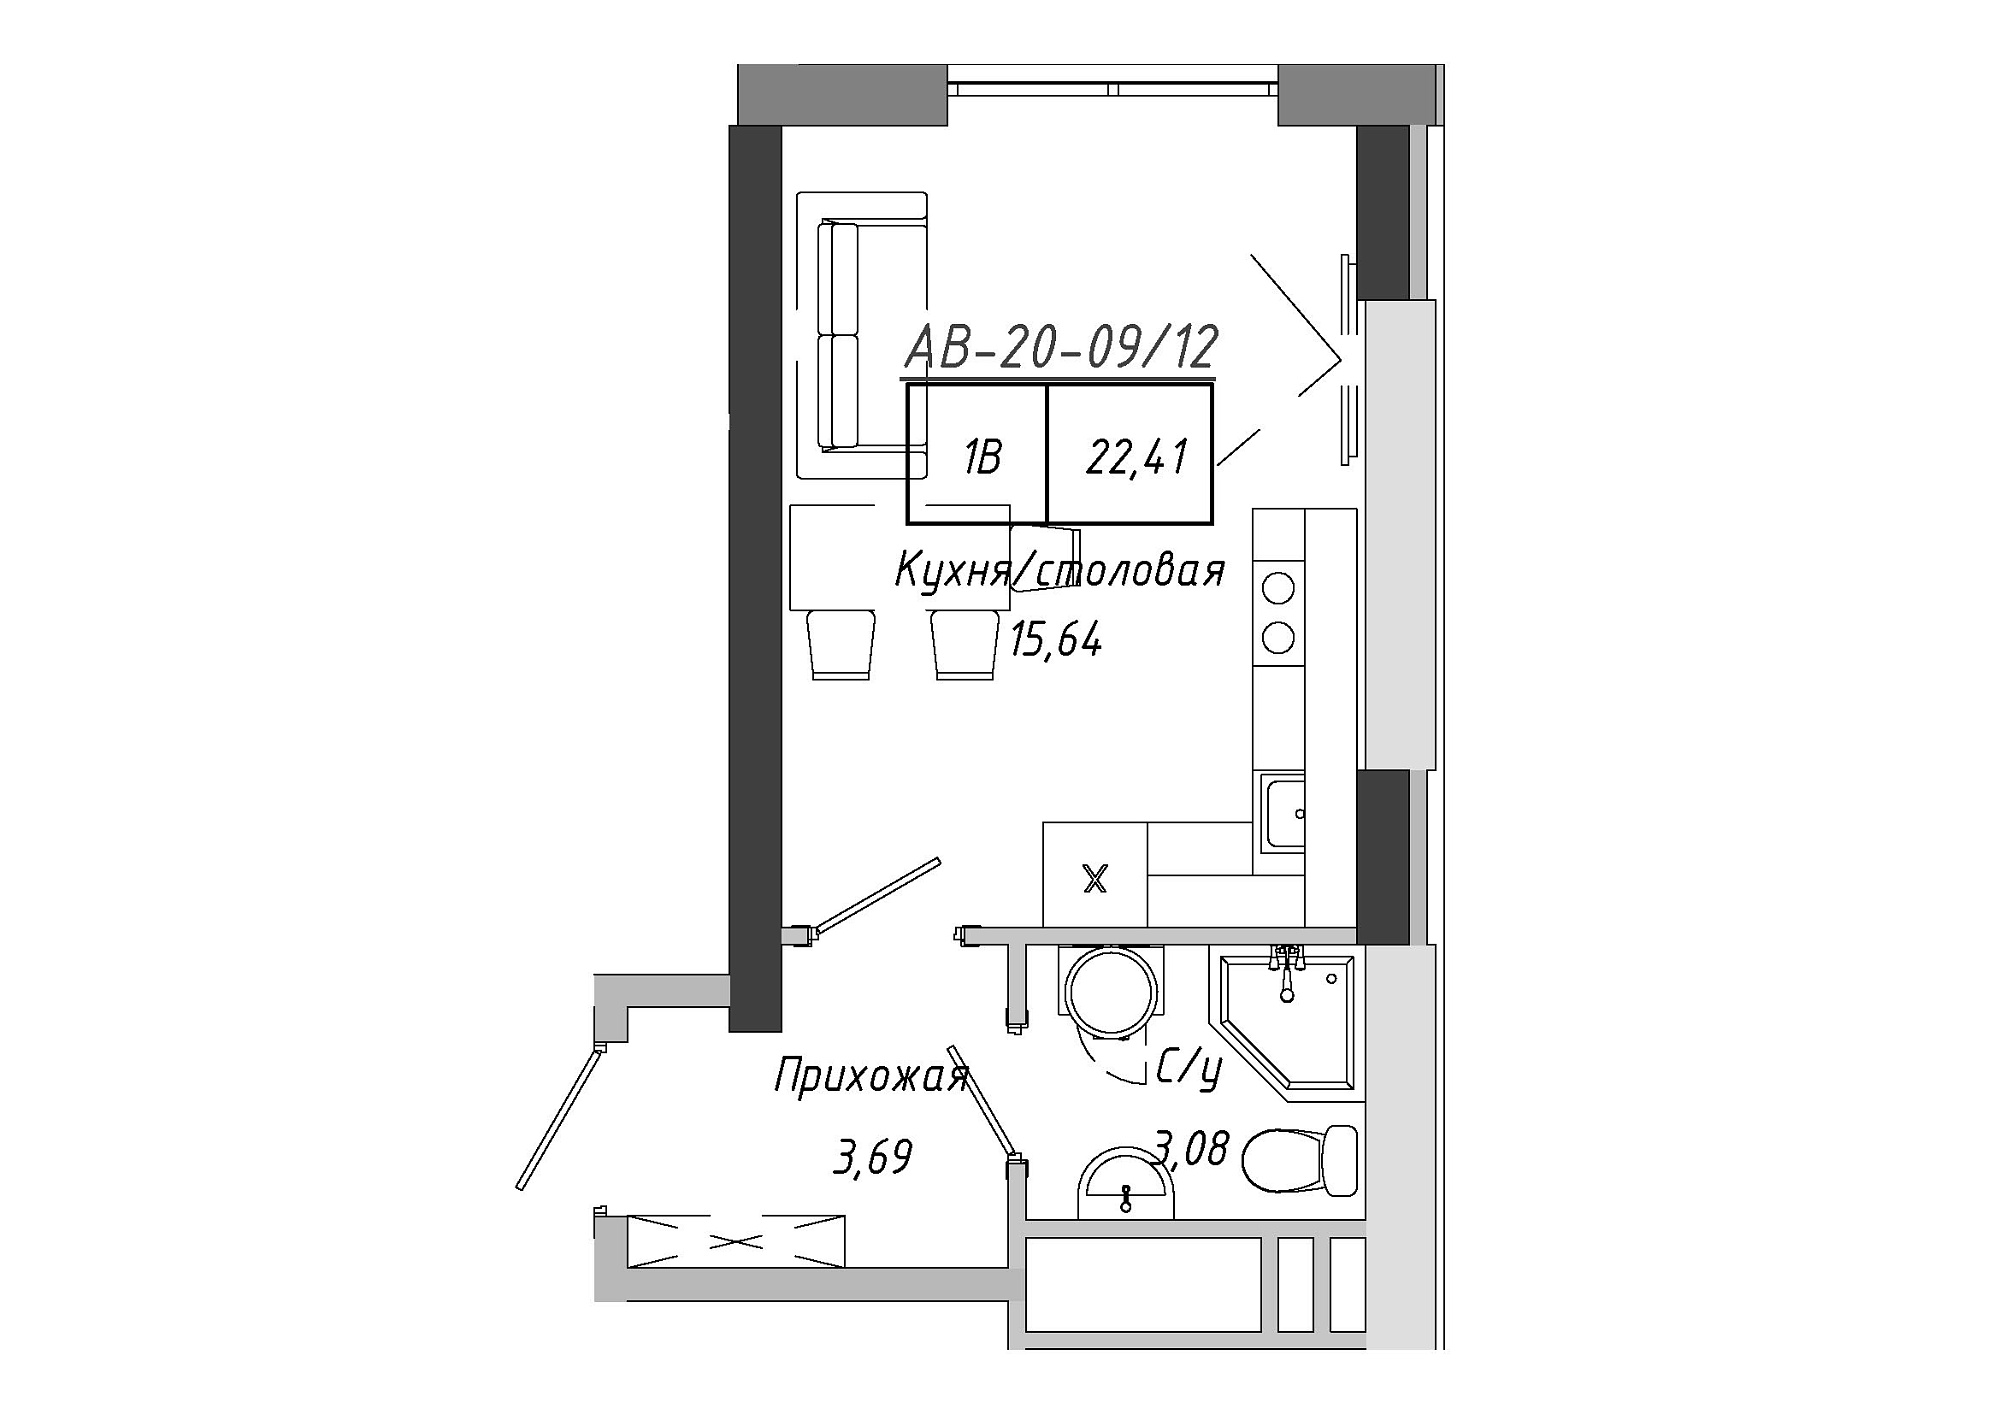 Планування Smart-квартира площею 21.87м2, AB-20-09/00012.